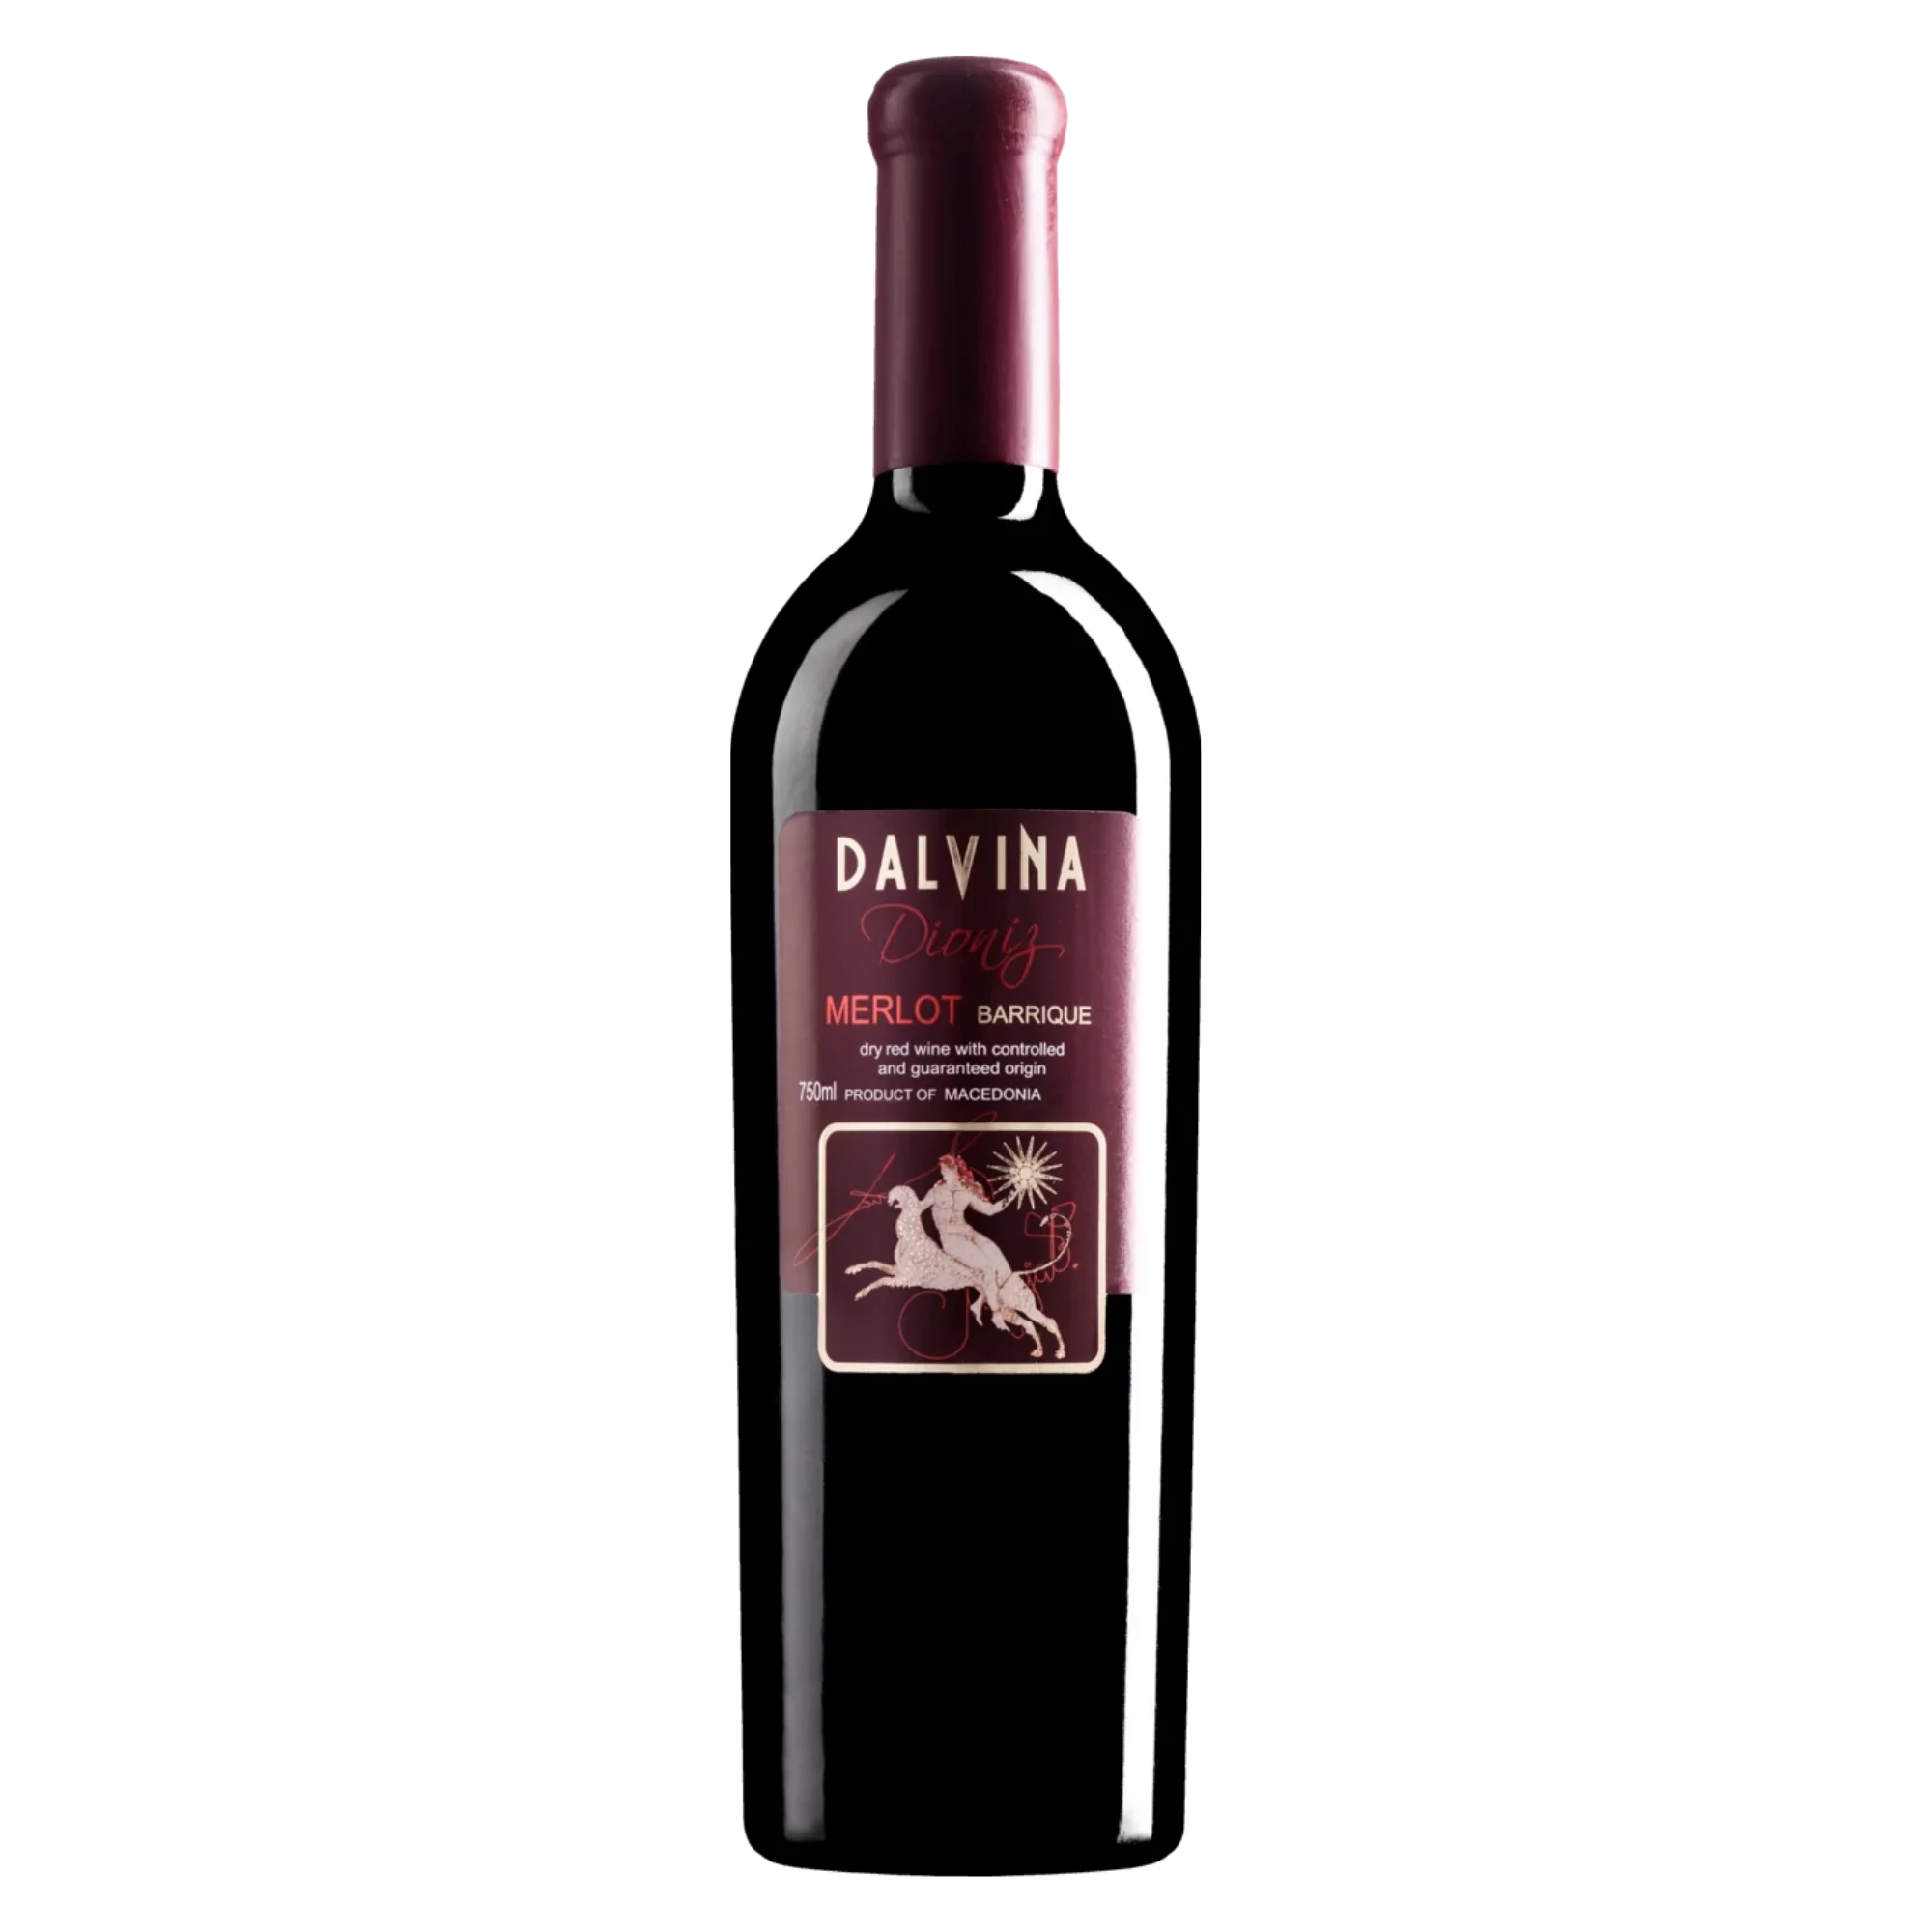 Dioniz Merlot Barrique 2016 - Rotwein trocken aus Nordmazedonien - Dalvina Winery